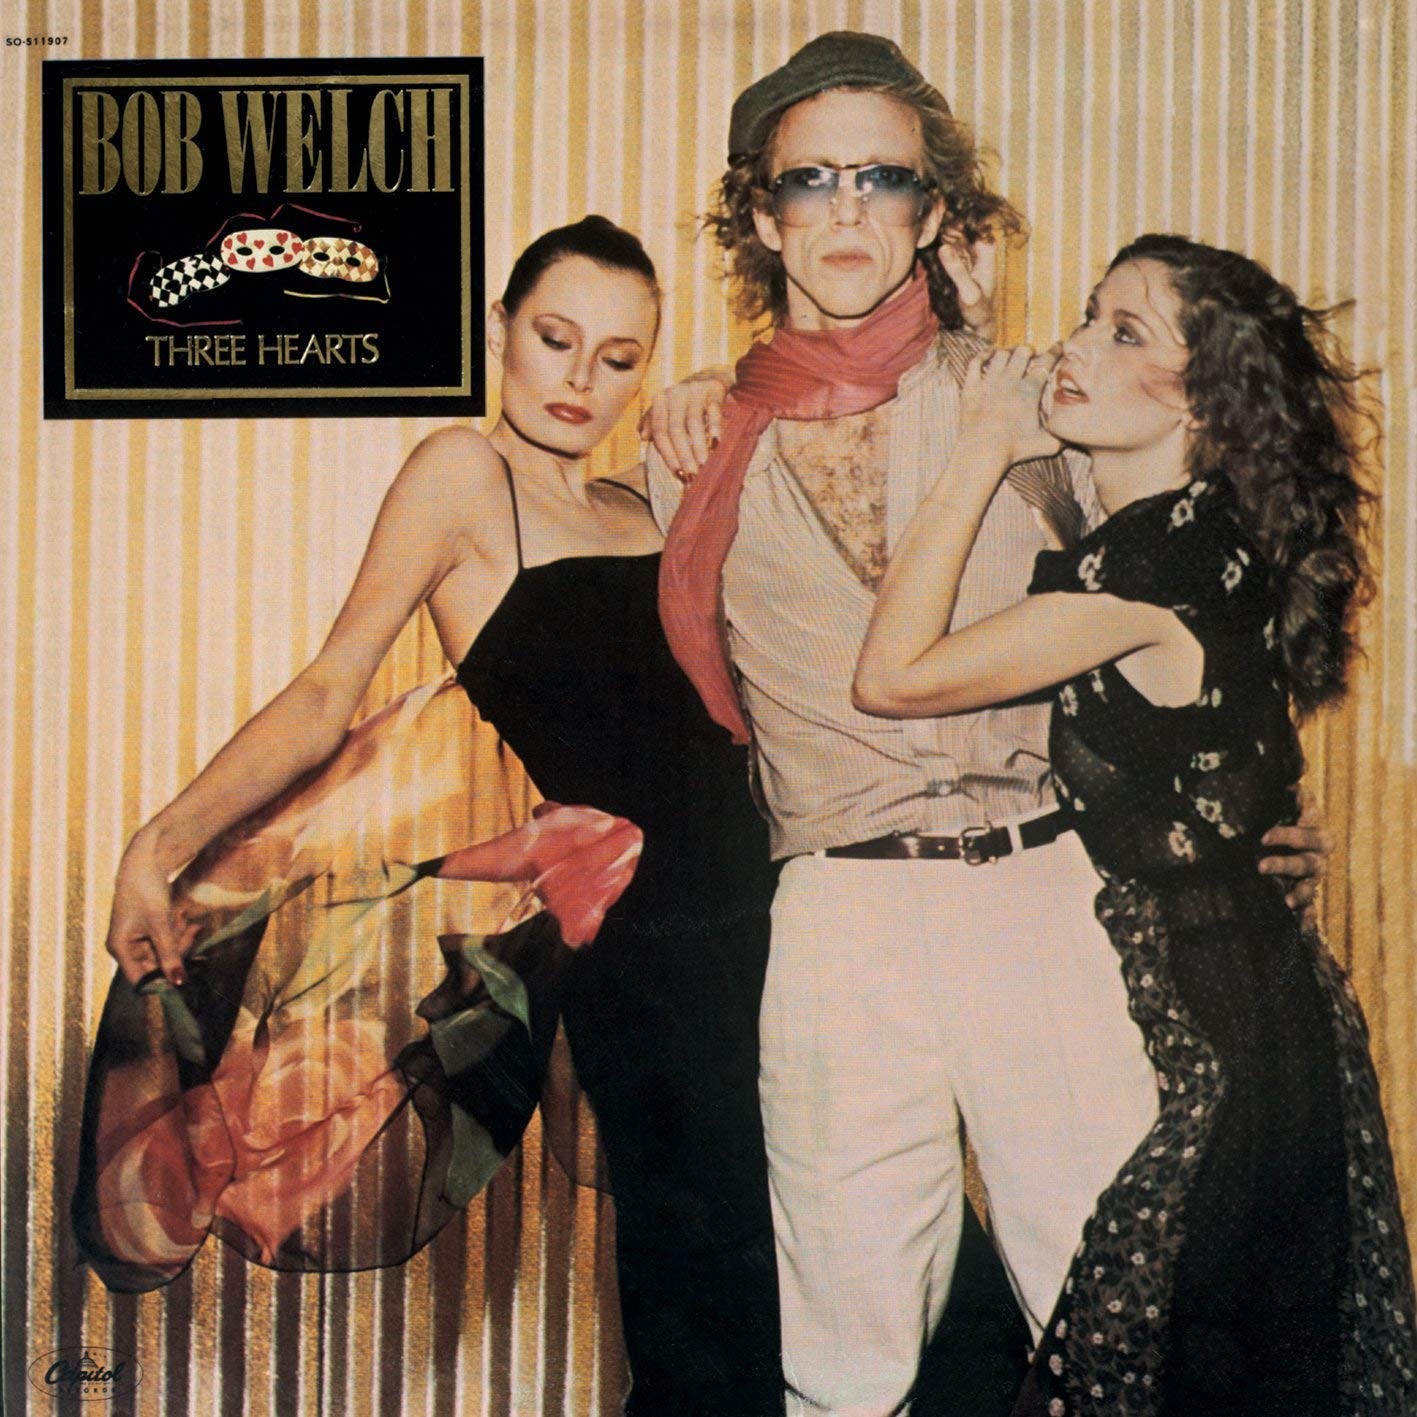 Bob Welch album cover: Three Hearts